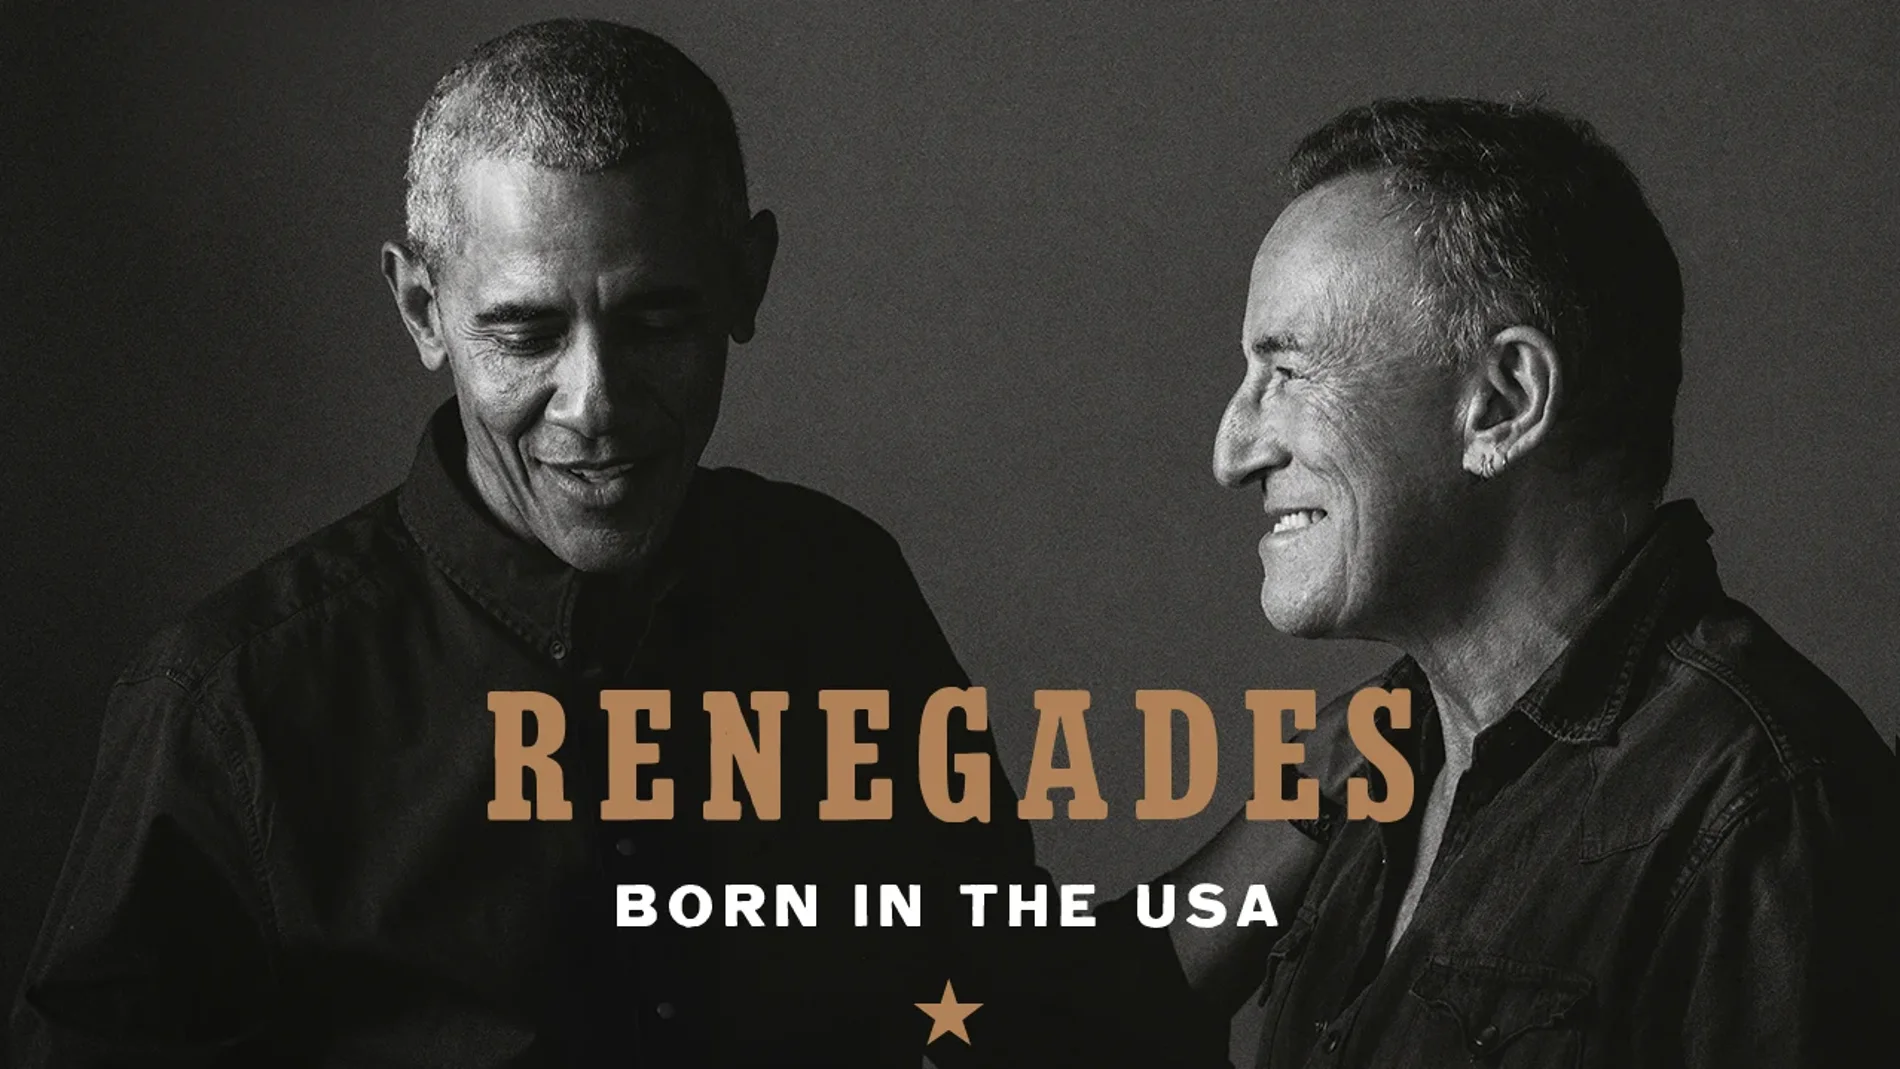 Portada del libro Renegados: Born in the USA, de Barack Obama y Bruce Springsteen